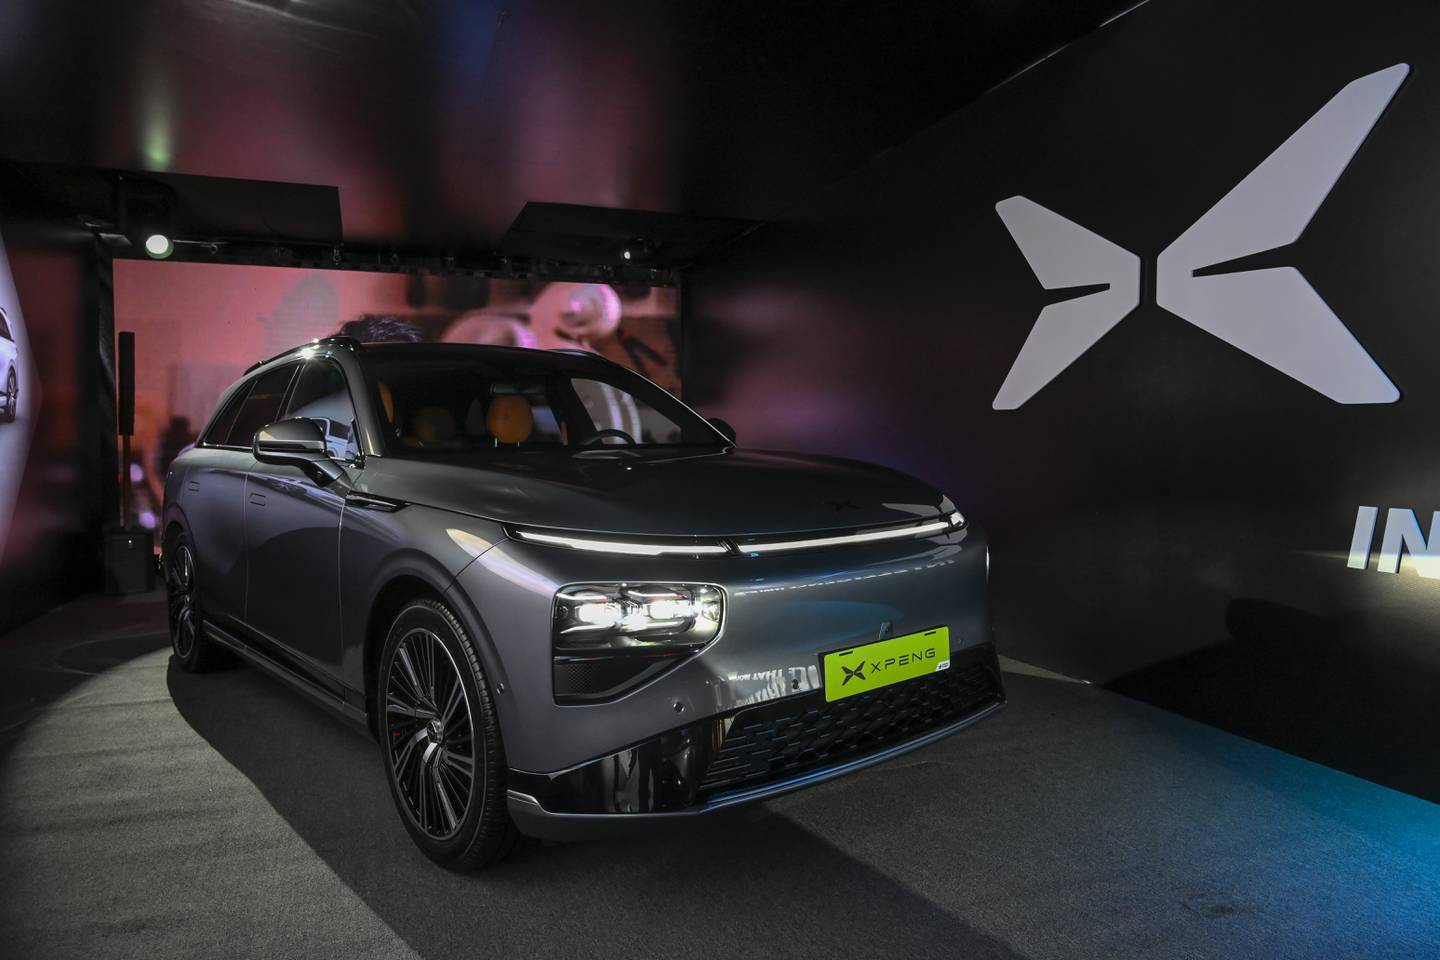 El viernes 22 de diciembre, Grupo Purdy anunció la inclusión de la marca de vehículos eléctricos XPeng en su portafolio. Uno de los modelos que venderán es el XPeng G9, a un precio de $74.900. Fotografía de cortesía.